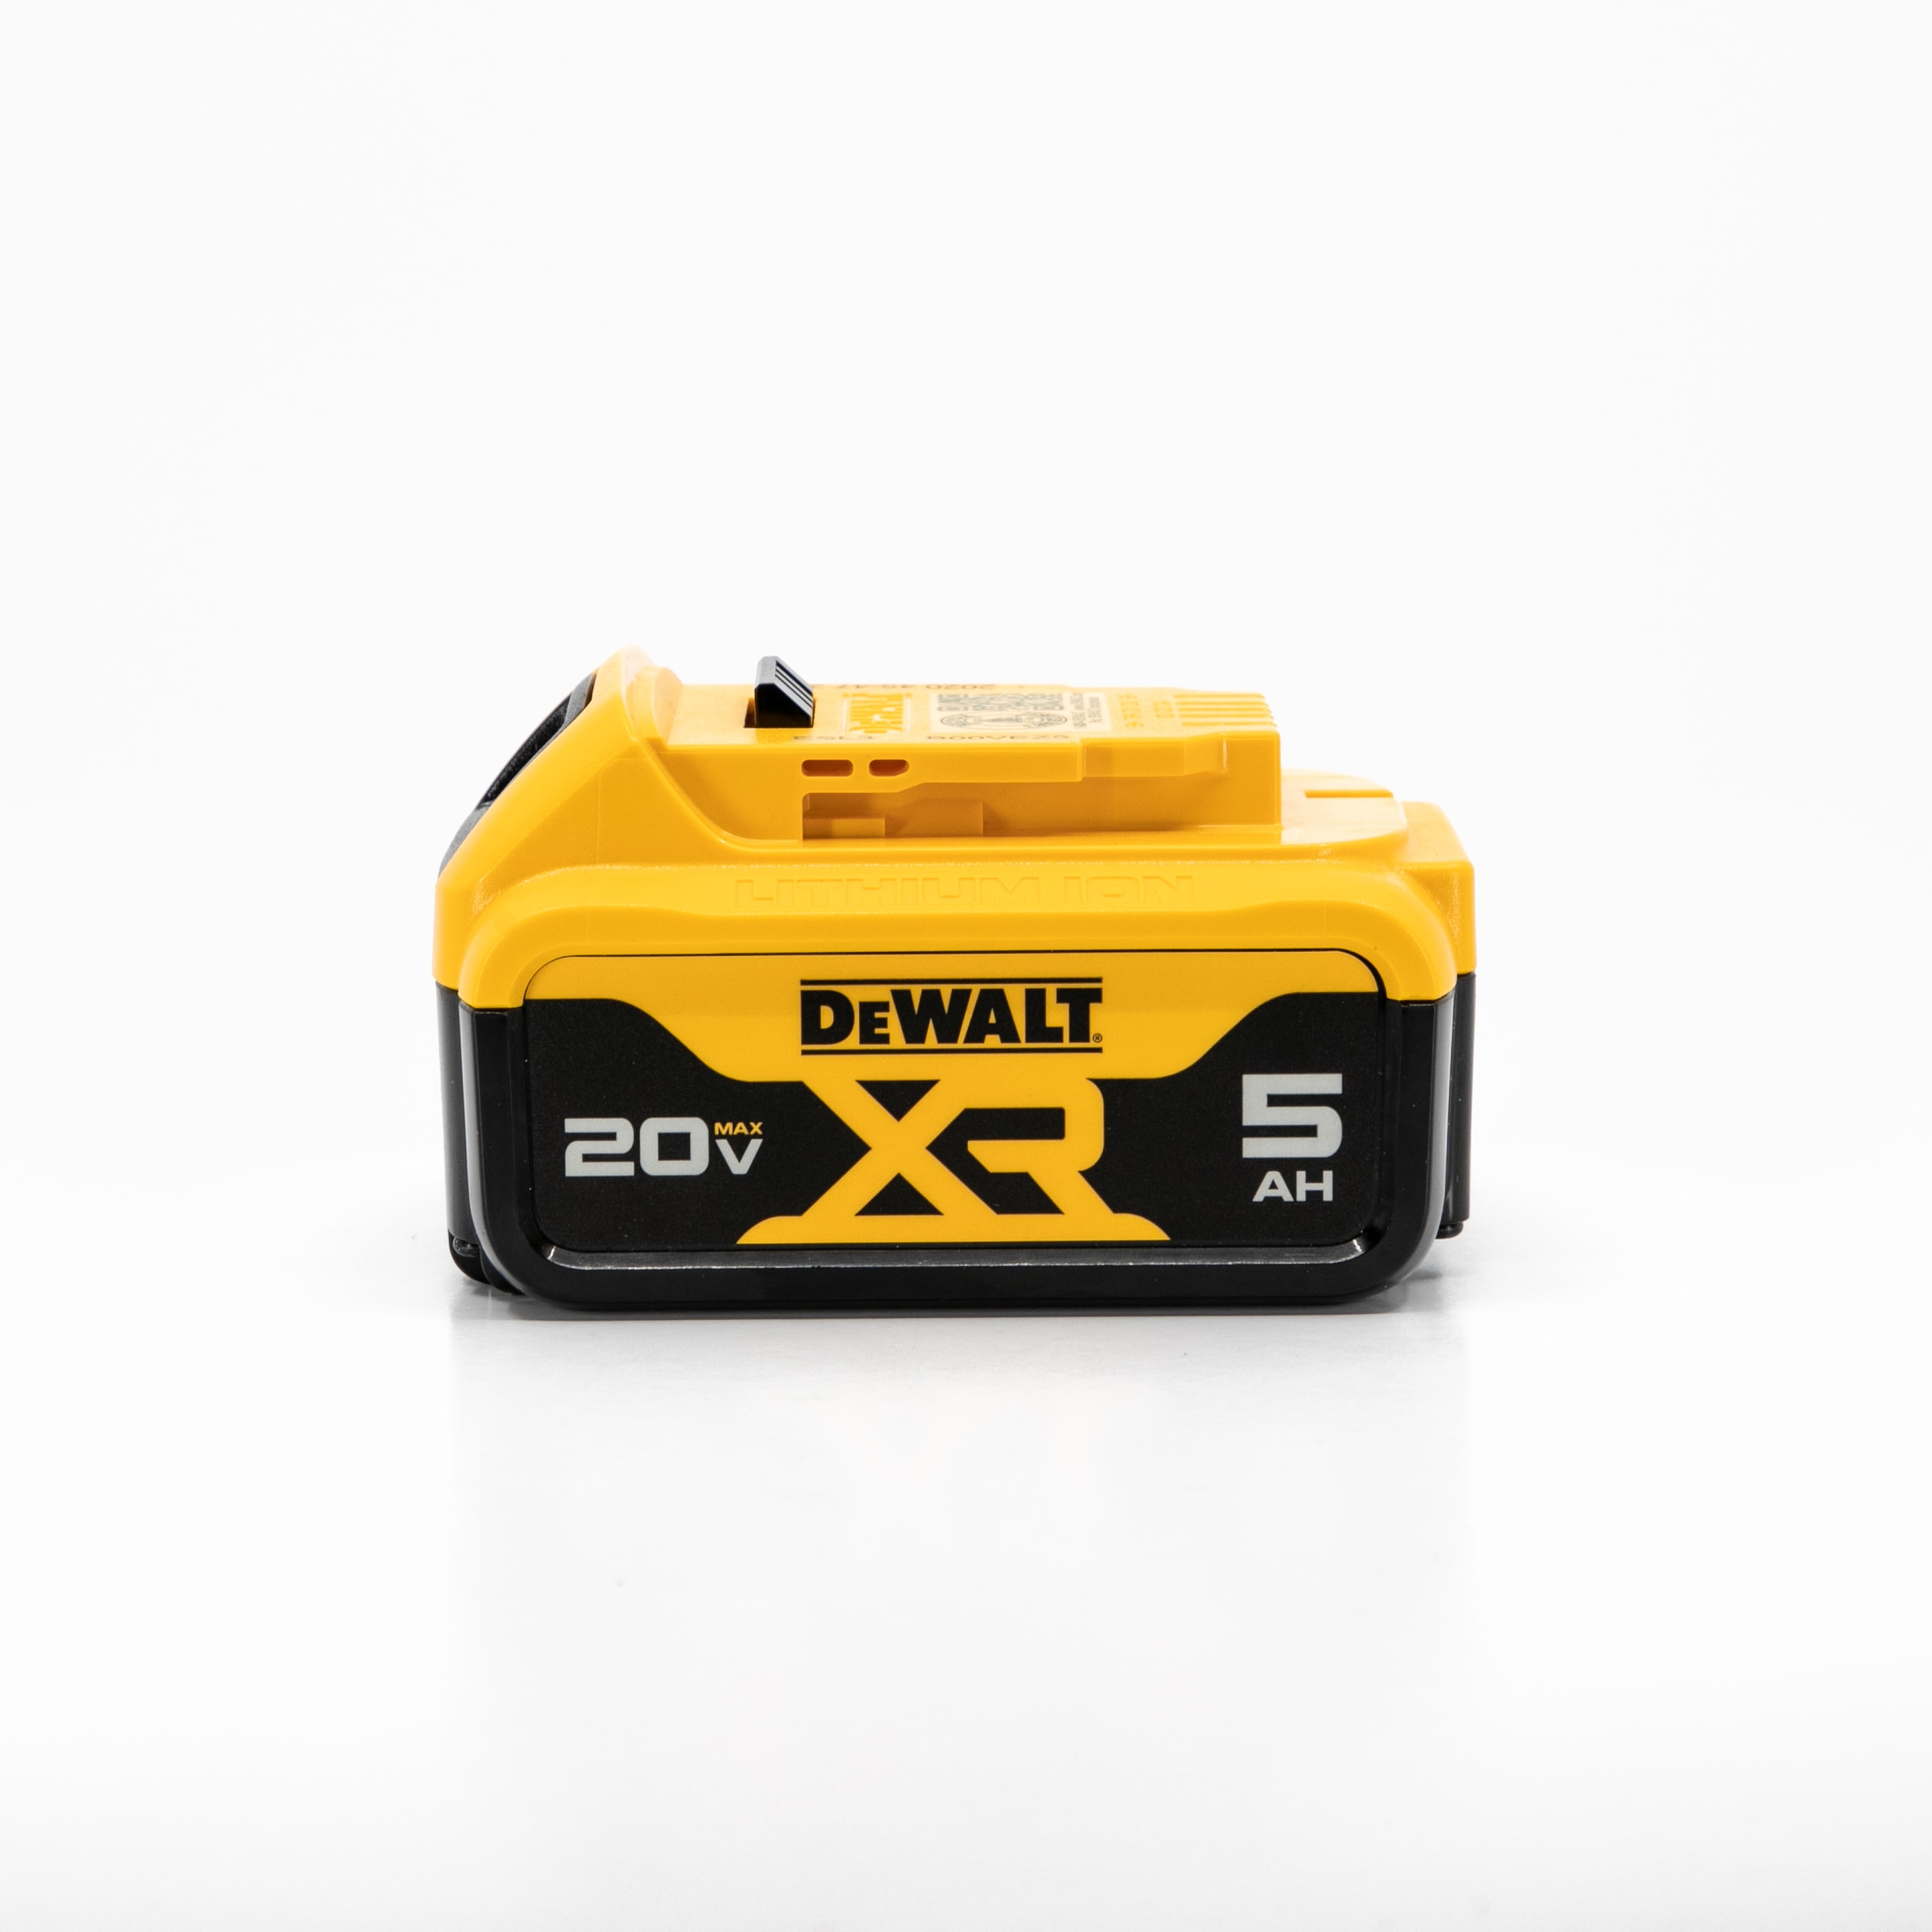 DEWALT 20V MAX XR Battery, 5 Ah, 2-Pack (DCB205-2) 